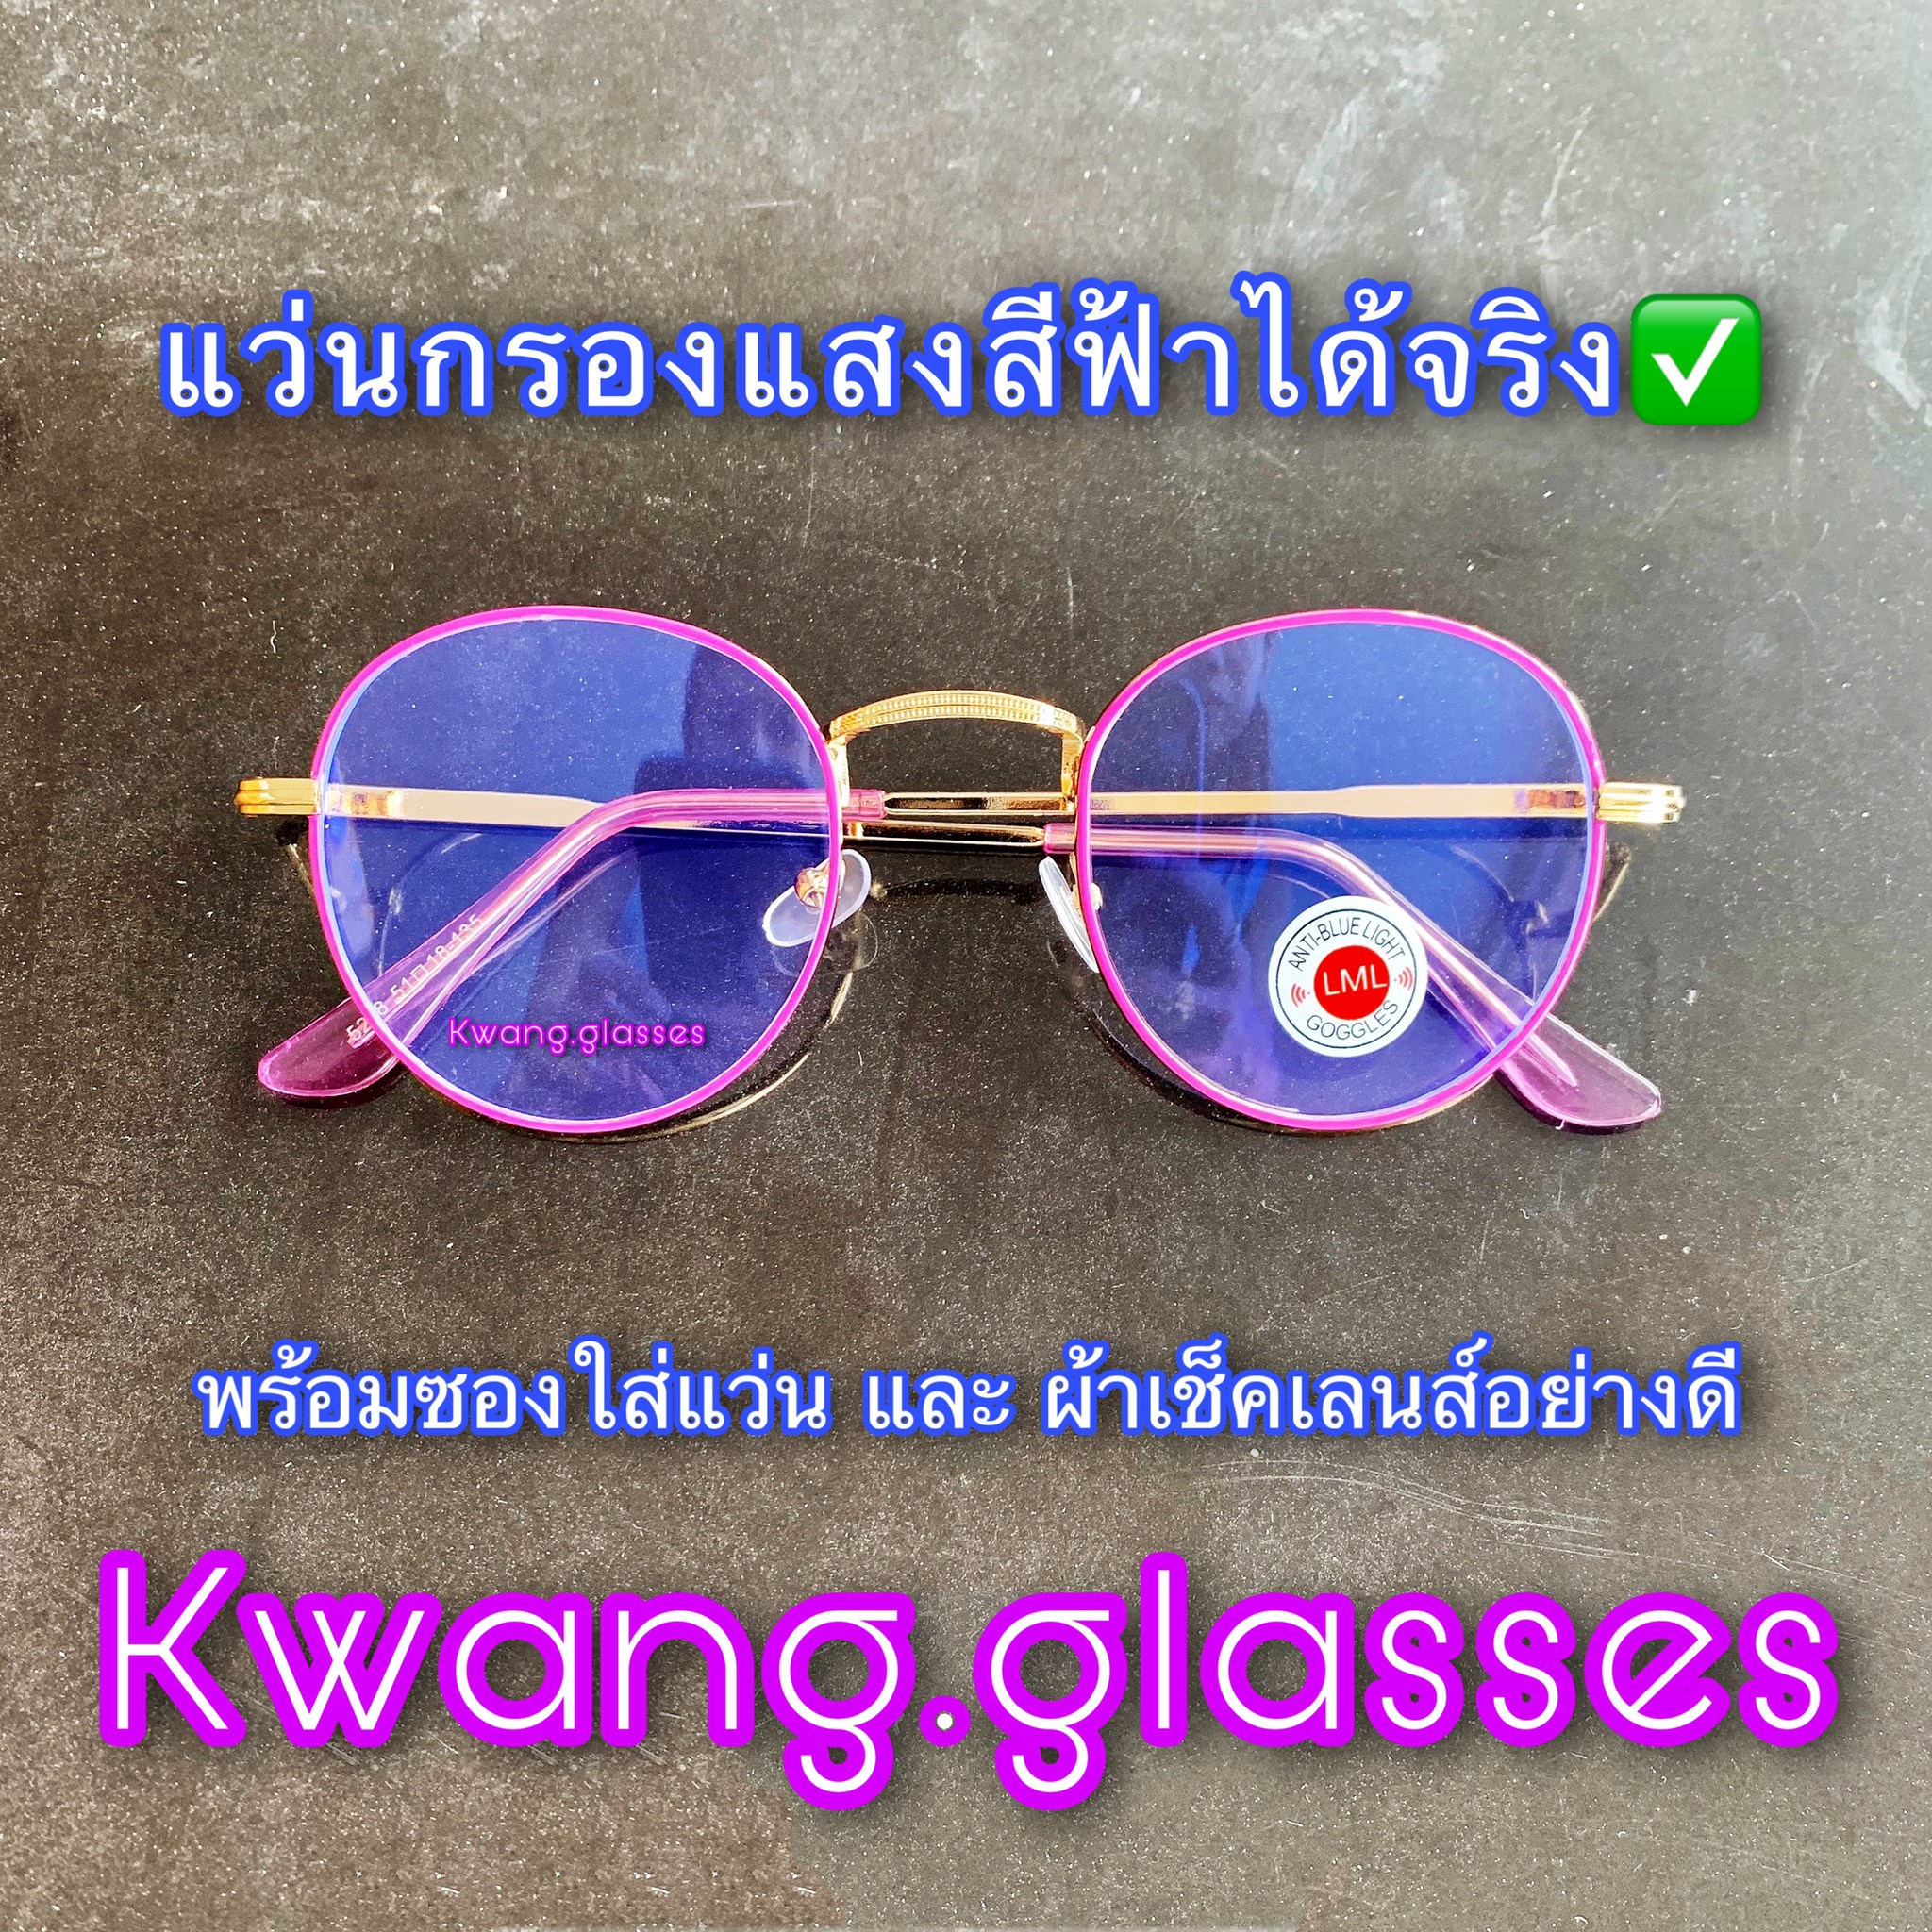 แว่นกรองแสง Purple Magenta Color กรอบม่วง สุดหรู แว่นตากรองแสงคอมพิวเตอร์ กรองแสงสีฟ้าได้อย่างดีเยี่ยม แว่นกรองแสงฟ้า แว่นตาแฟชั่น แว่นตากรองแสงคอมพิวเตอร์ กรองแสงสีฟ้าได้อย่างดีเยี่ยม แว่นตา แว่นตาแฟชั่น สวย เท่ห์ ดูดี มีสไตล์ในแบบตัวคุณเอง รับประกันคุณภ